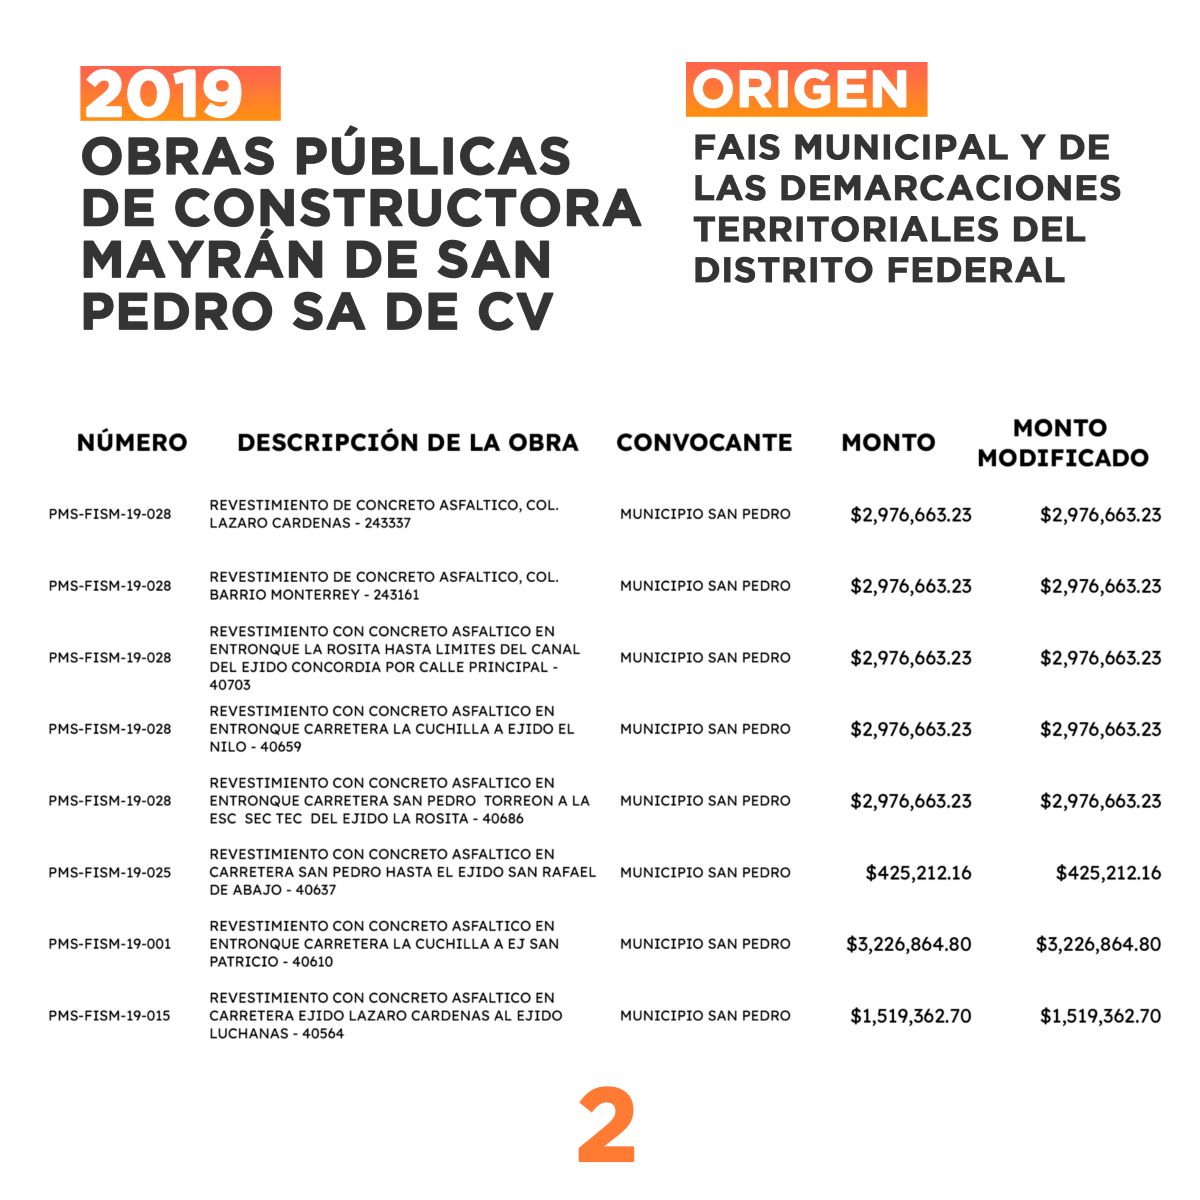 Contratos de Constructora Mayrán de San Pedro provenientes del Fondo de Aportaciones para la Infraestructura Social 2019. FUENTE: Secretaría de Finanzas de Coahuila.